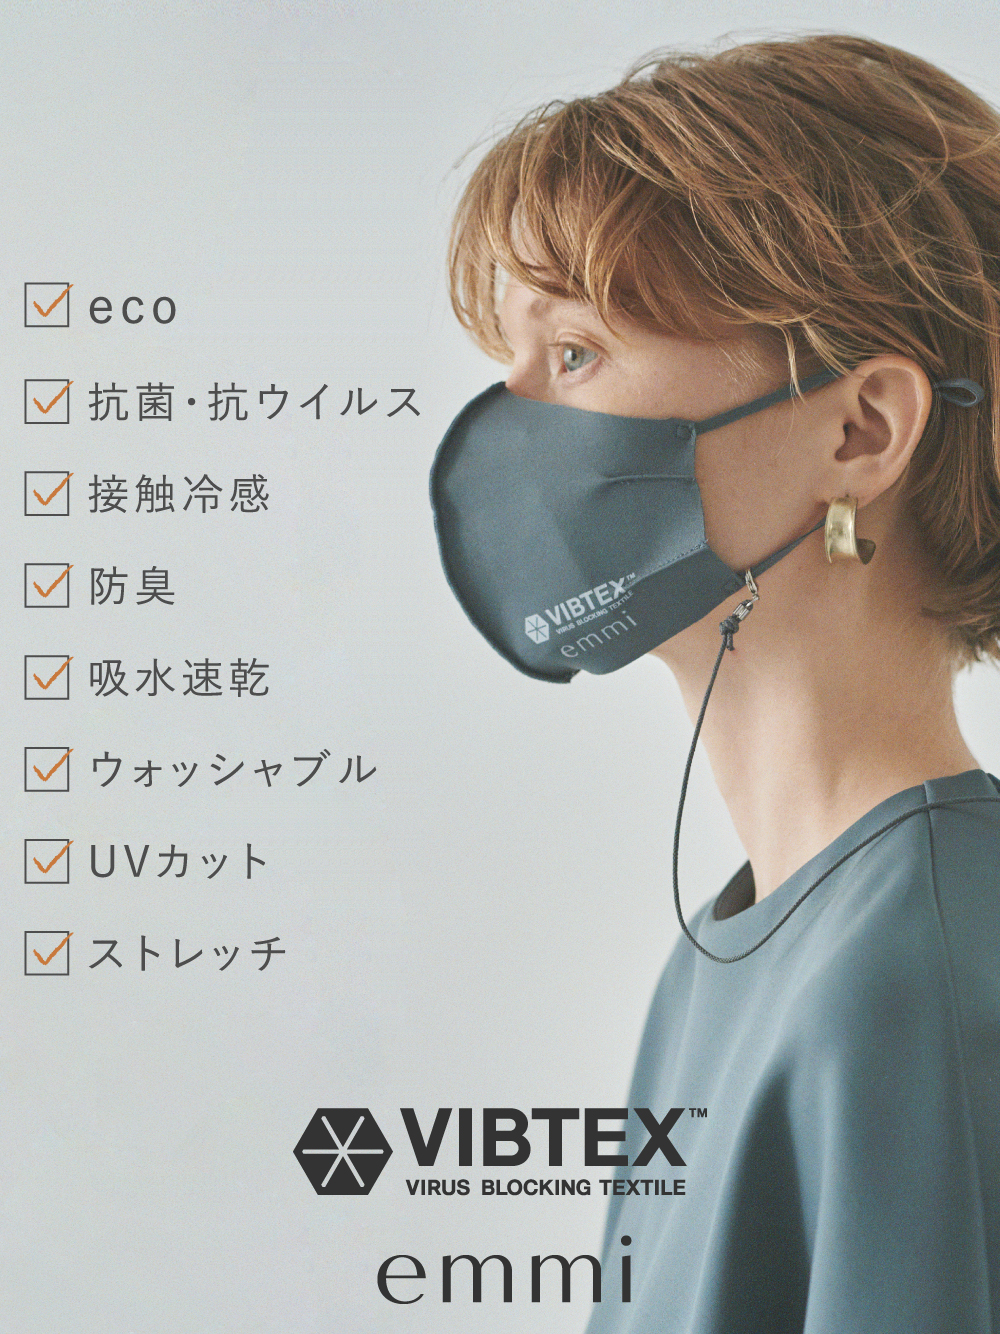 【emmi yoga】VIBTEX ポーチSet アジャスター付きマスク(GRY-F)